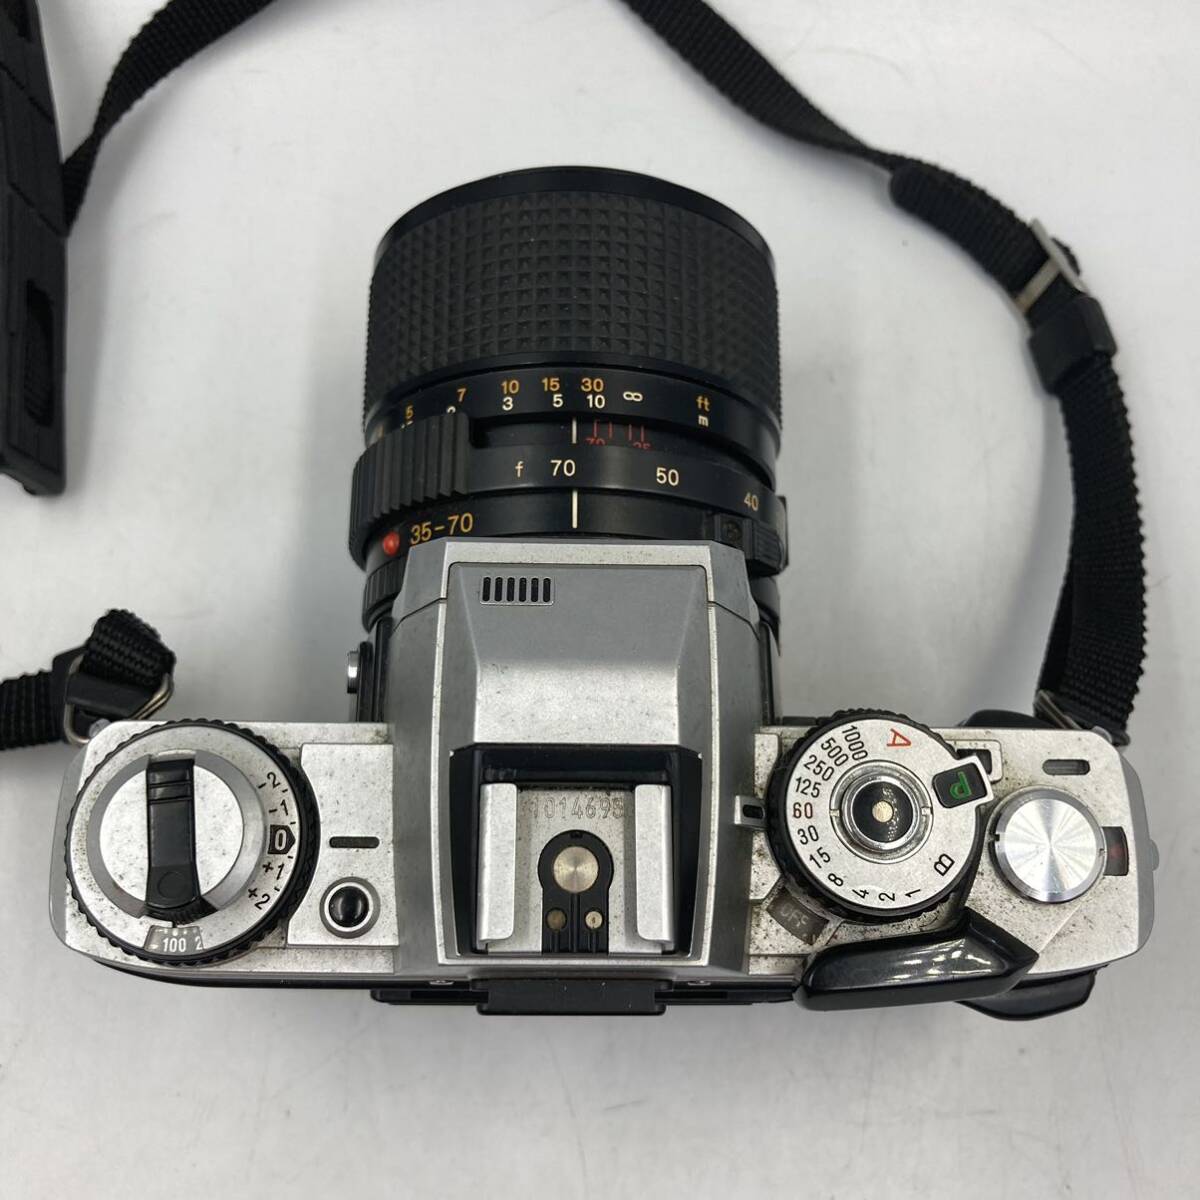 4/18 JO-C917*MINOLTA Minolta X-700* film camera / single‐lens reflex camera /35-70mm 1:3.5/CAMERA/DE0 DI0